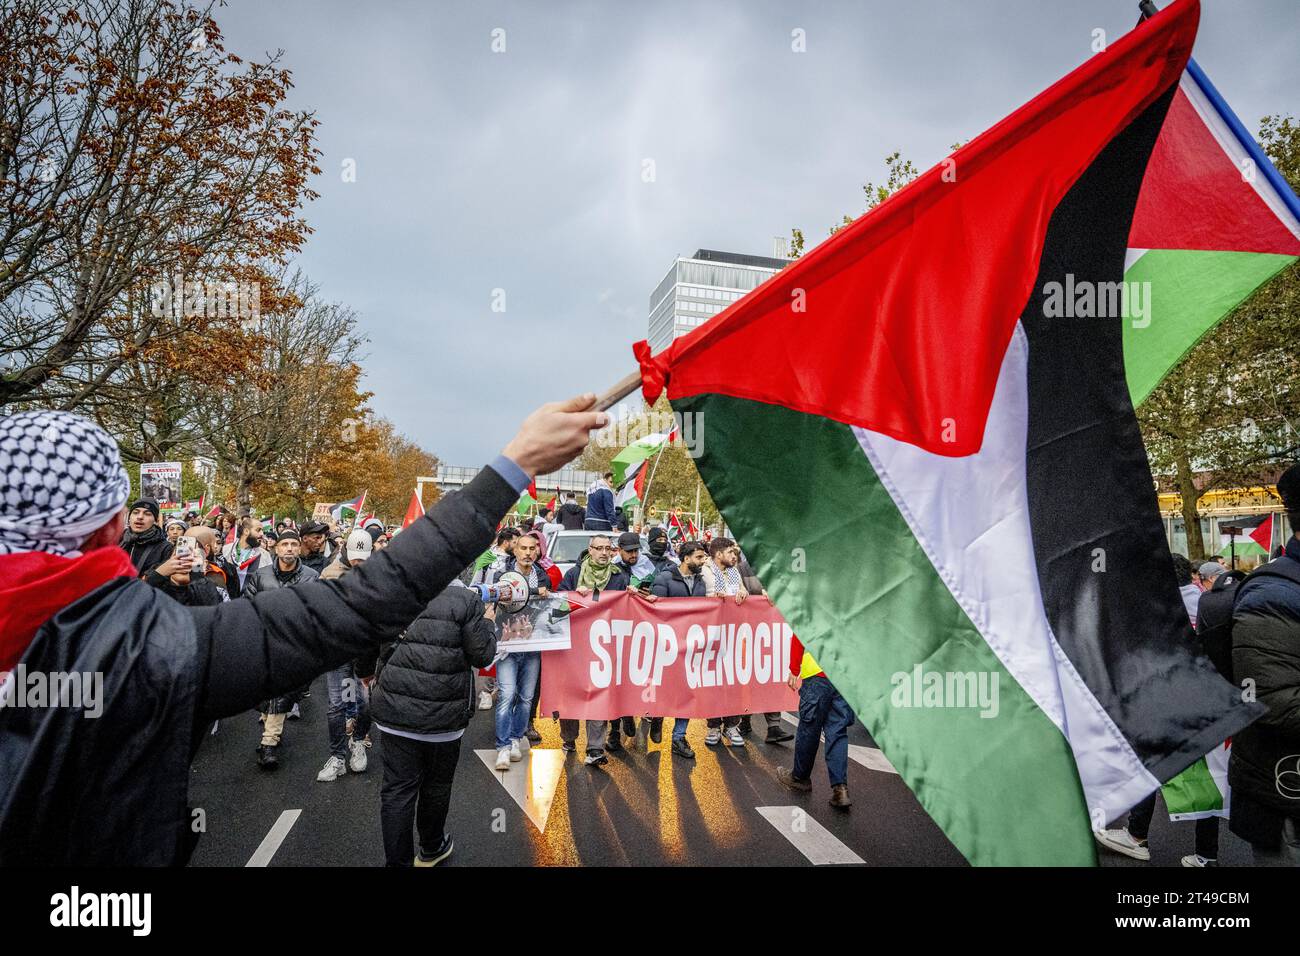 DIE HAAG - Teilnehmer an einer nationalen Demonstration gegen den Krieg in Gaza. Der Protest wurde von einer Gruppe palästinensischer Organisationen organisiert. Sie wollen einen sofortigen Waffenstillstand und humanitäre Hilfe für die Bevölkerung von Gaza. ANP ROBIN UTRECHT niederlande raus - belgien raus Stockfoto